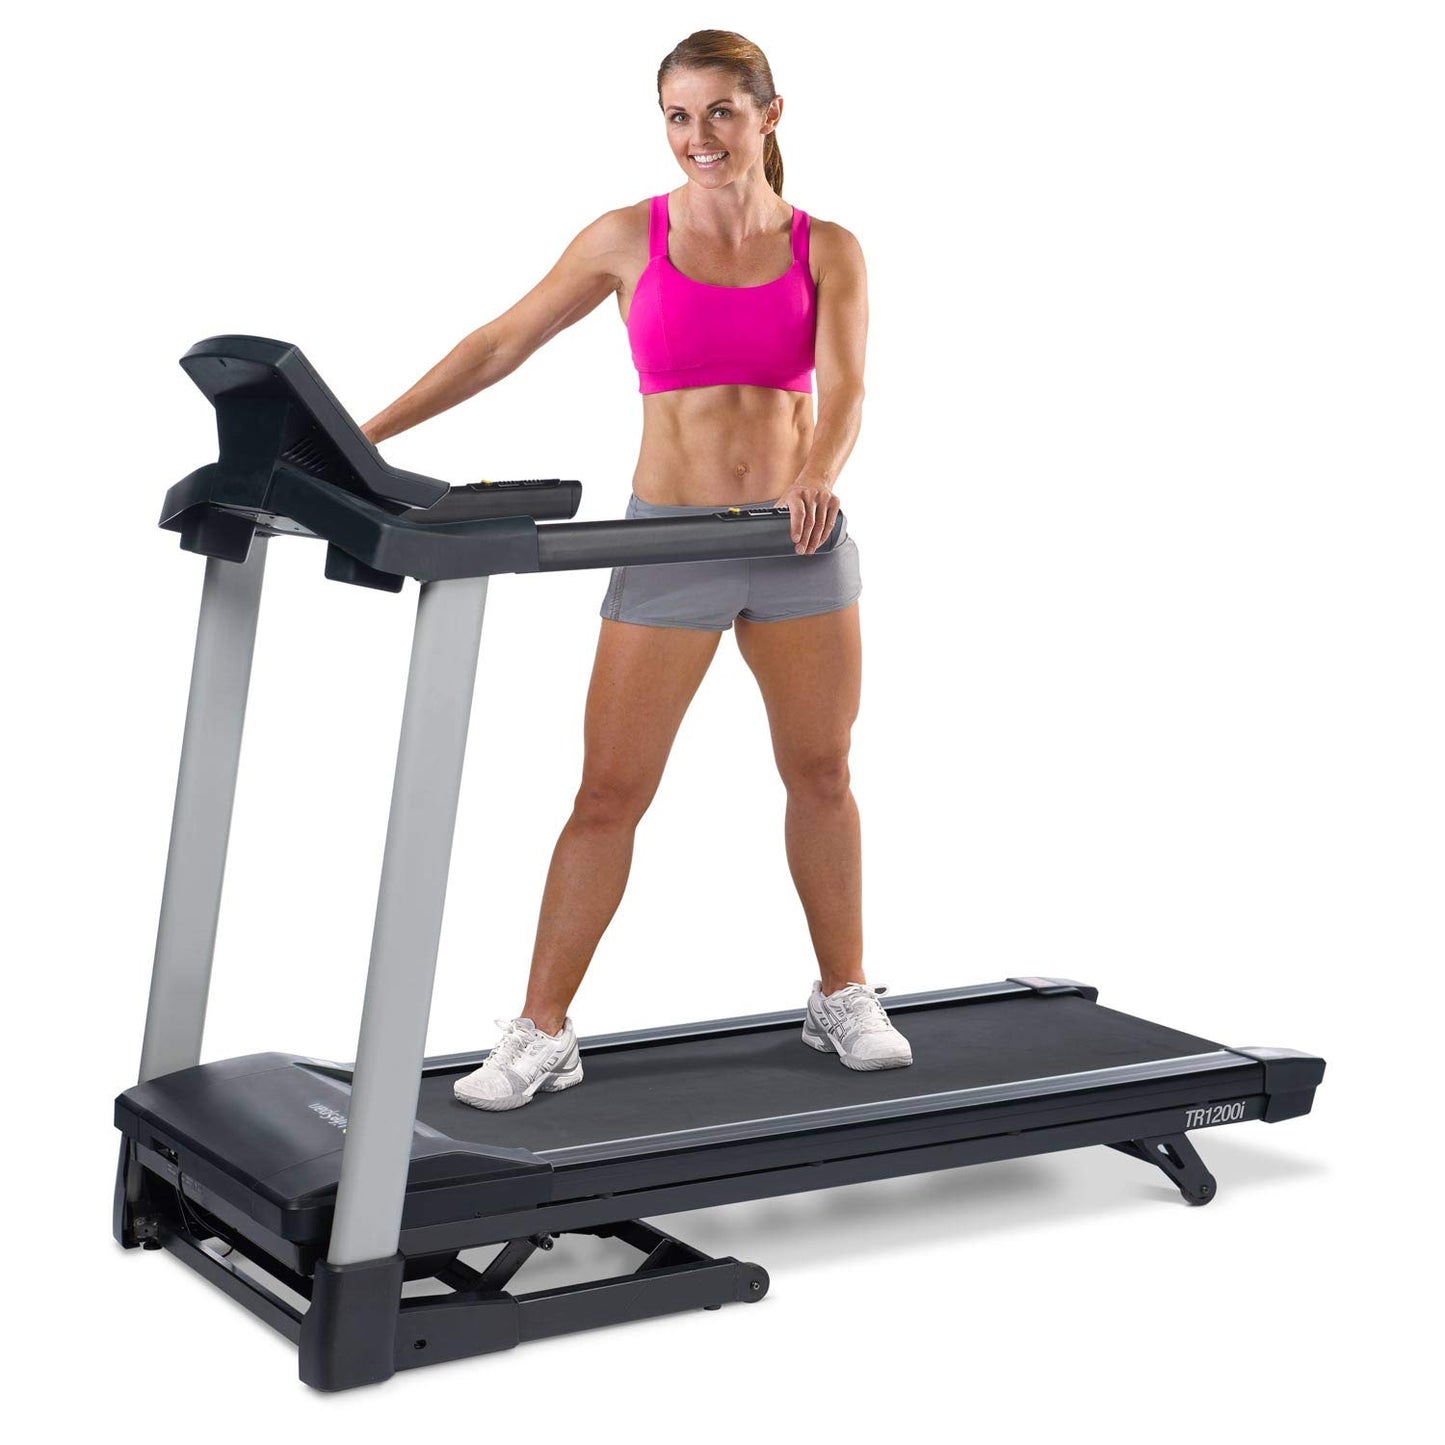 LifeSpan Motorized Treadmill 2.25 HP - TR1200iT